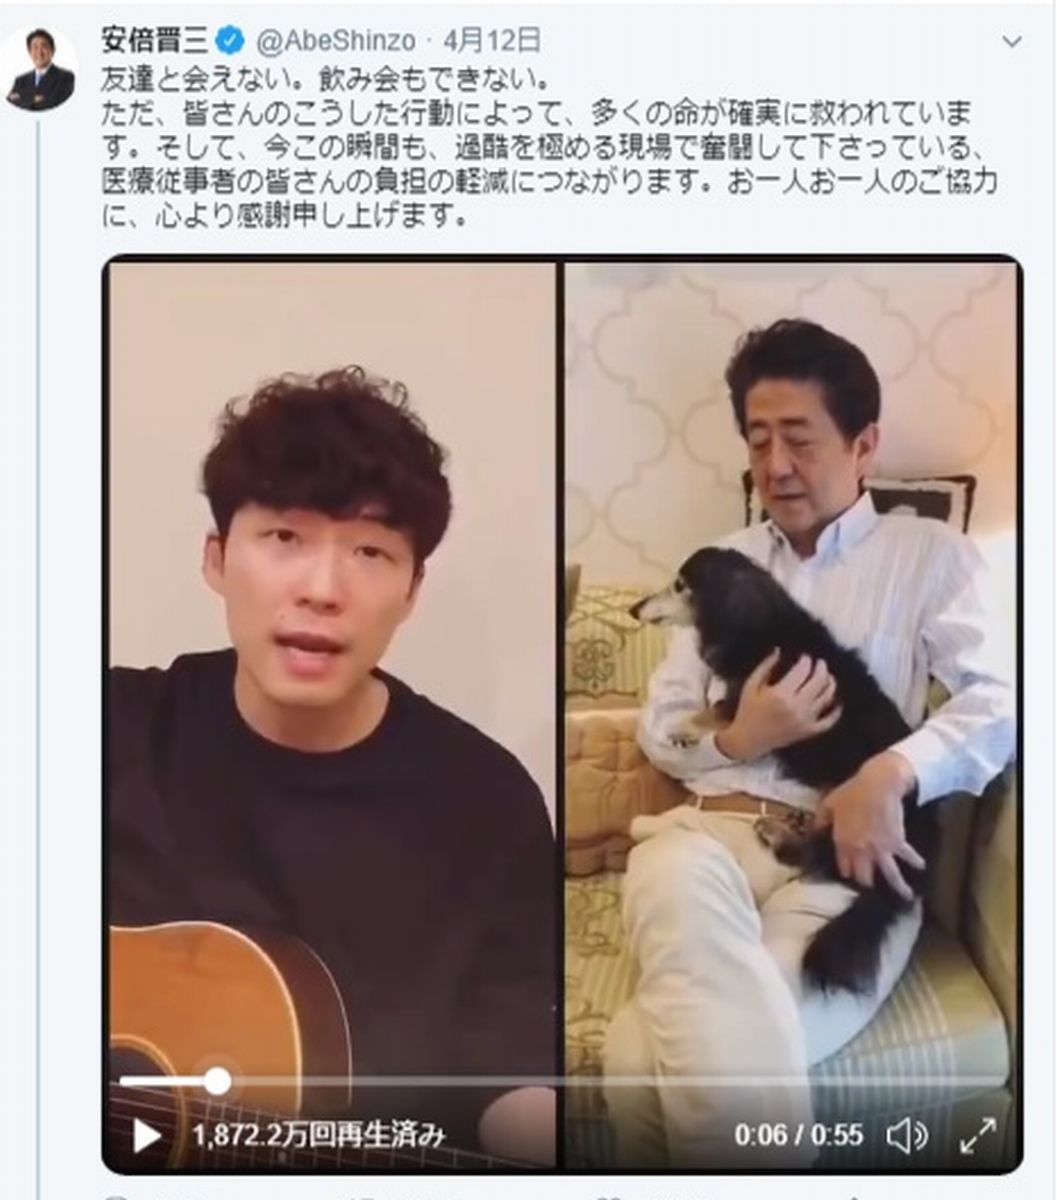 安倍晋三首相のツイッターに、2020年4月12日に投稿された動画